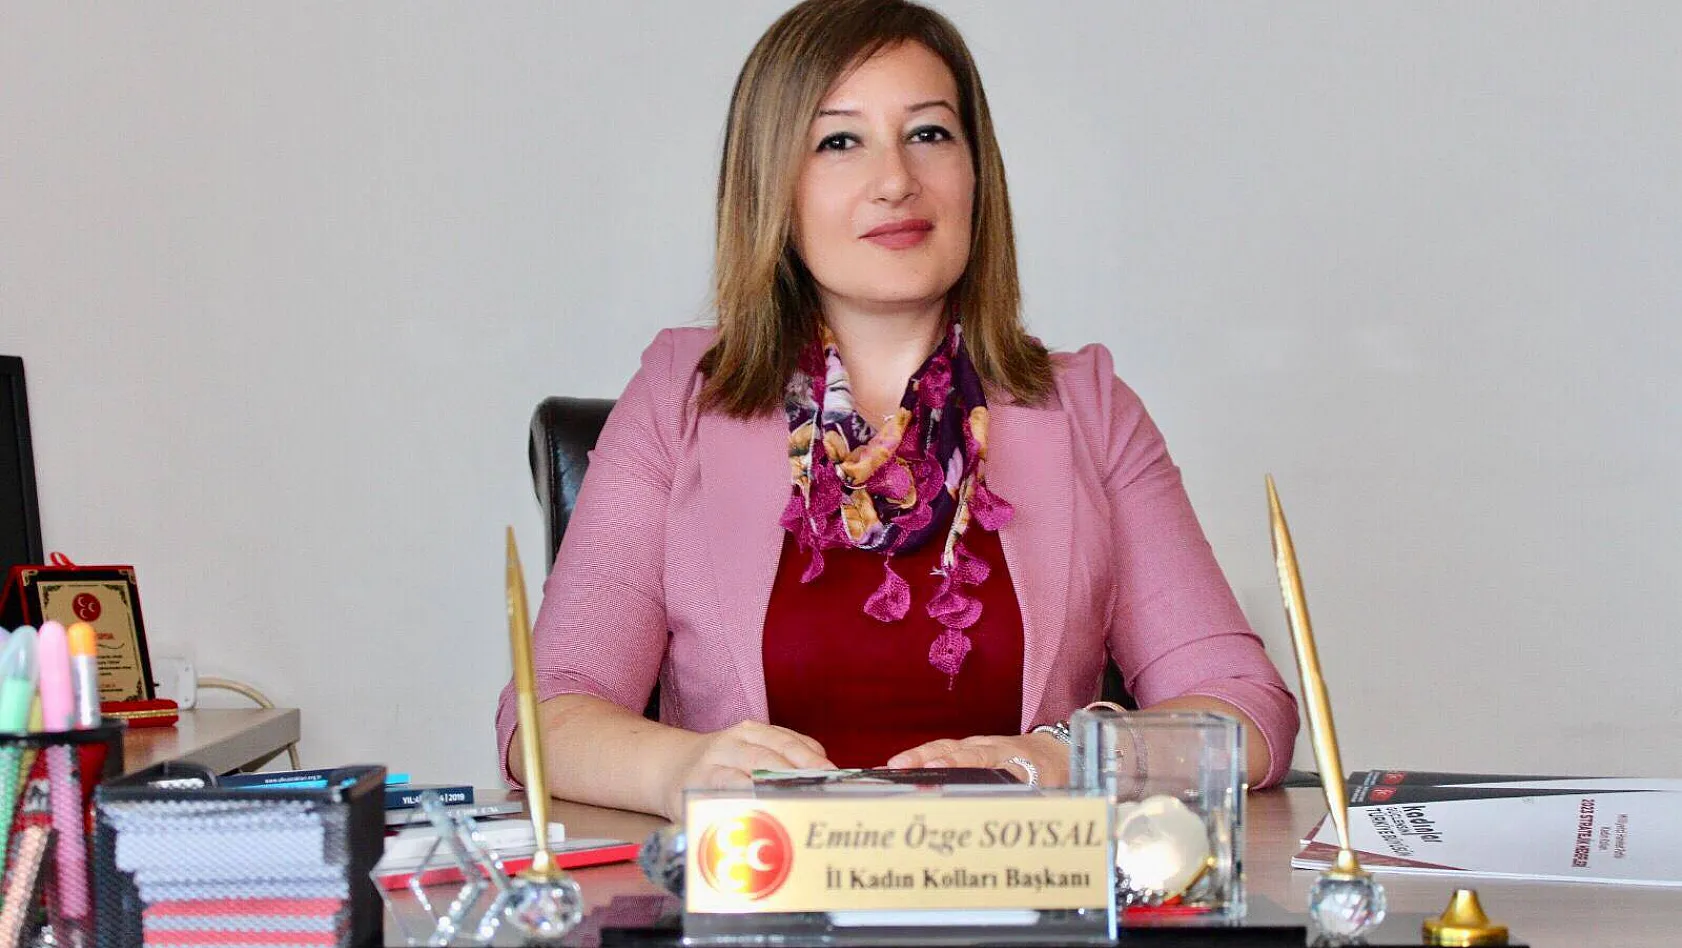  MHP Kadın Kolları Başkanından Cumhuriyet açıklaması